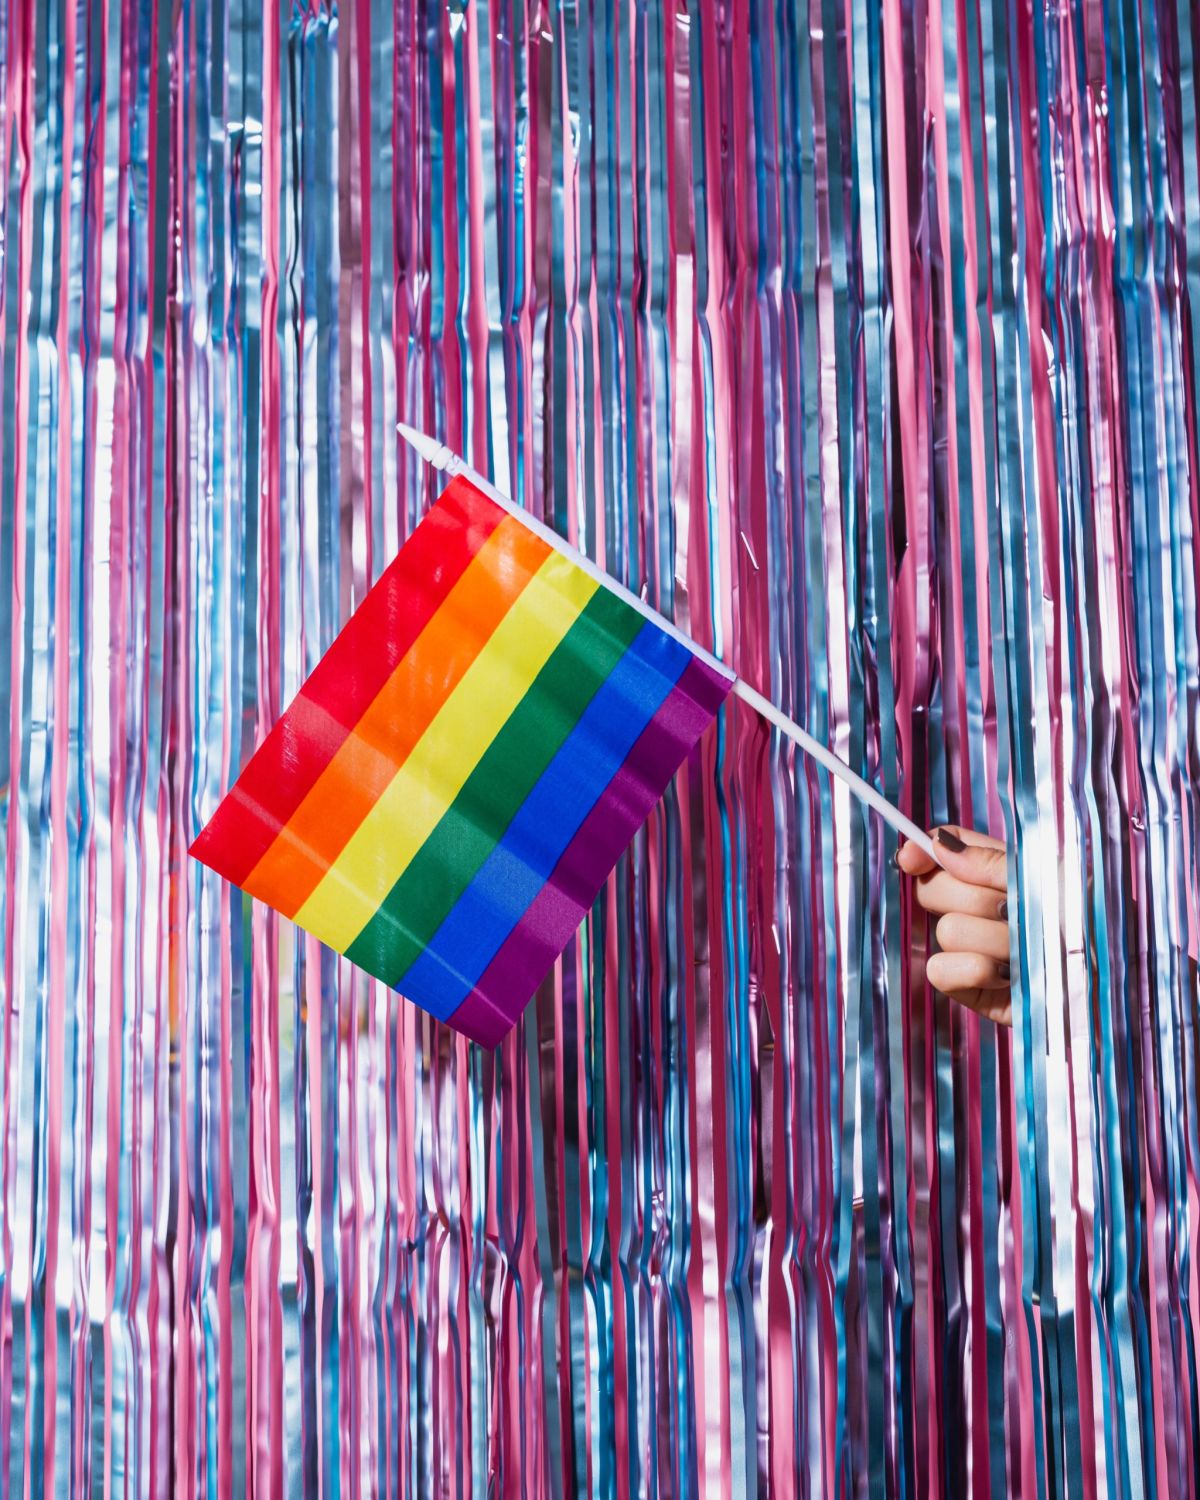 #BeMoreJill: An example of LGBTQ+ allyship